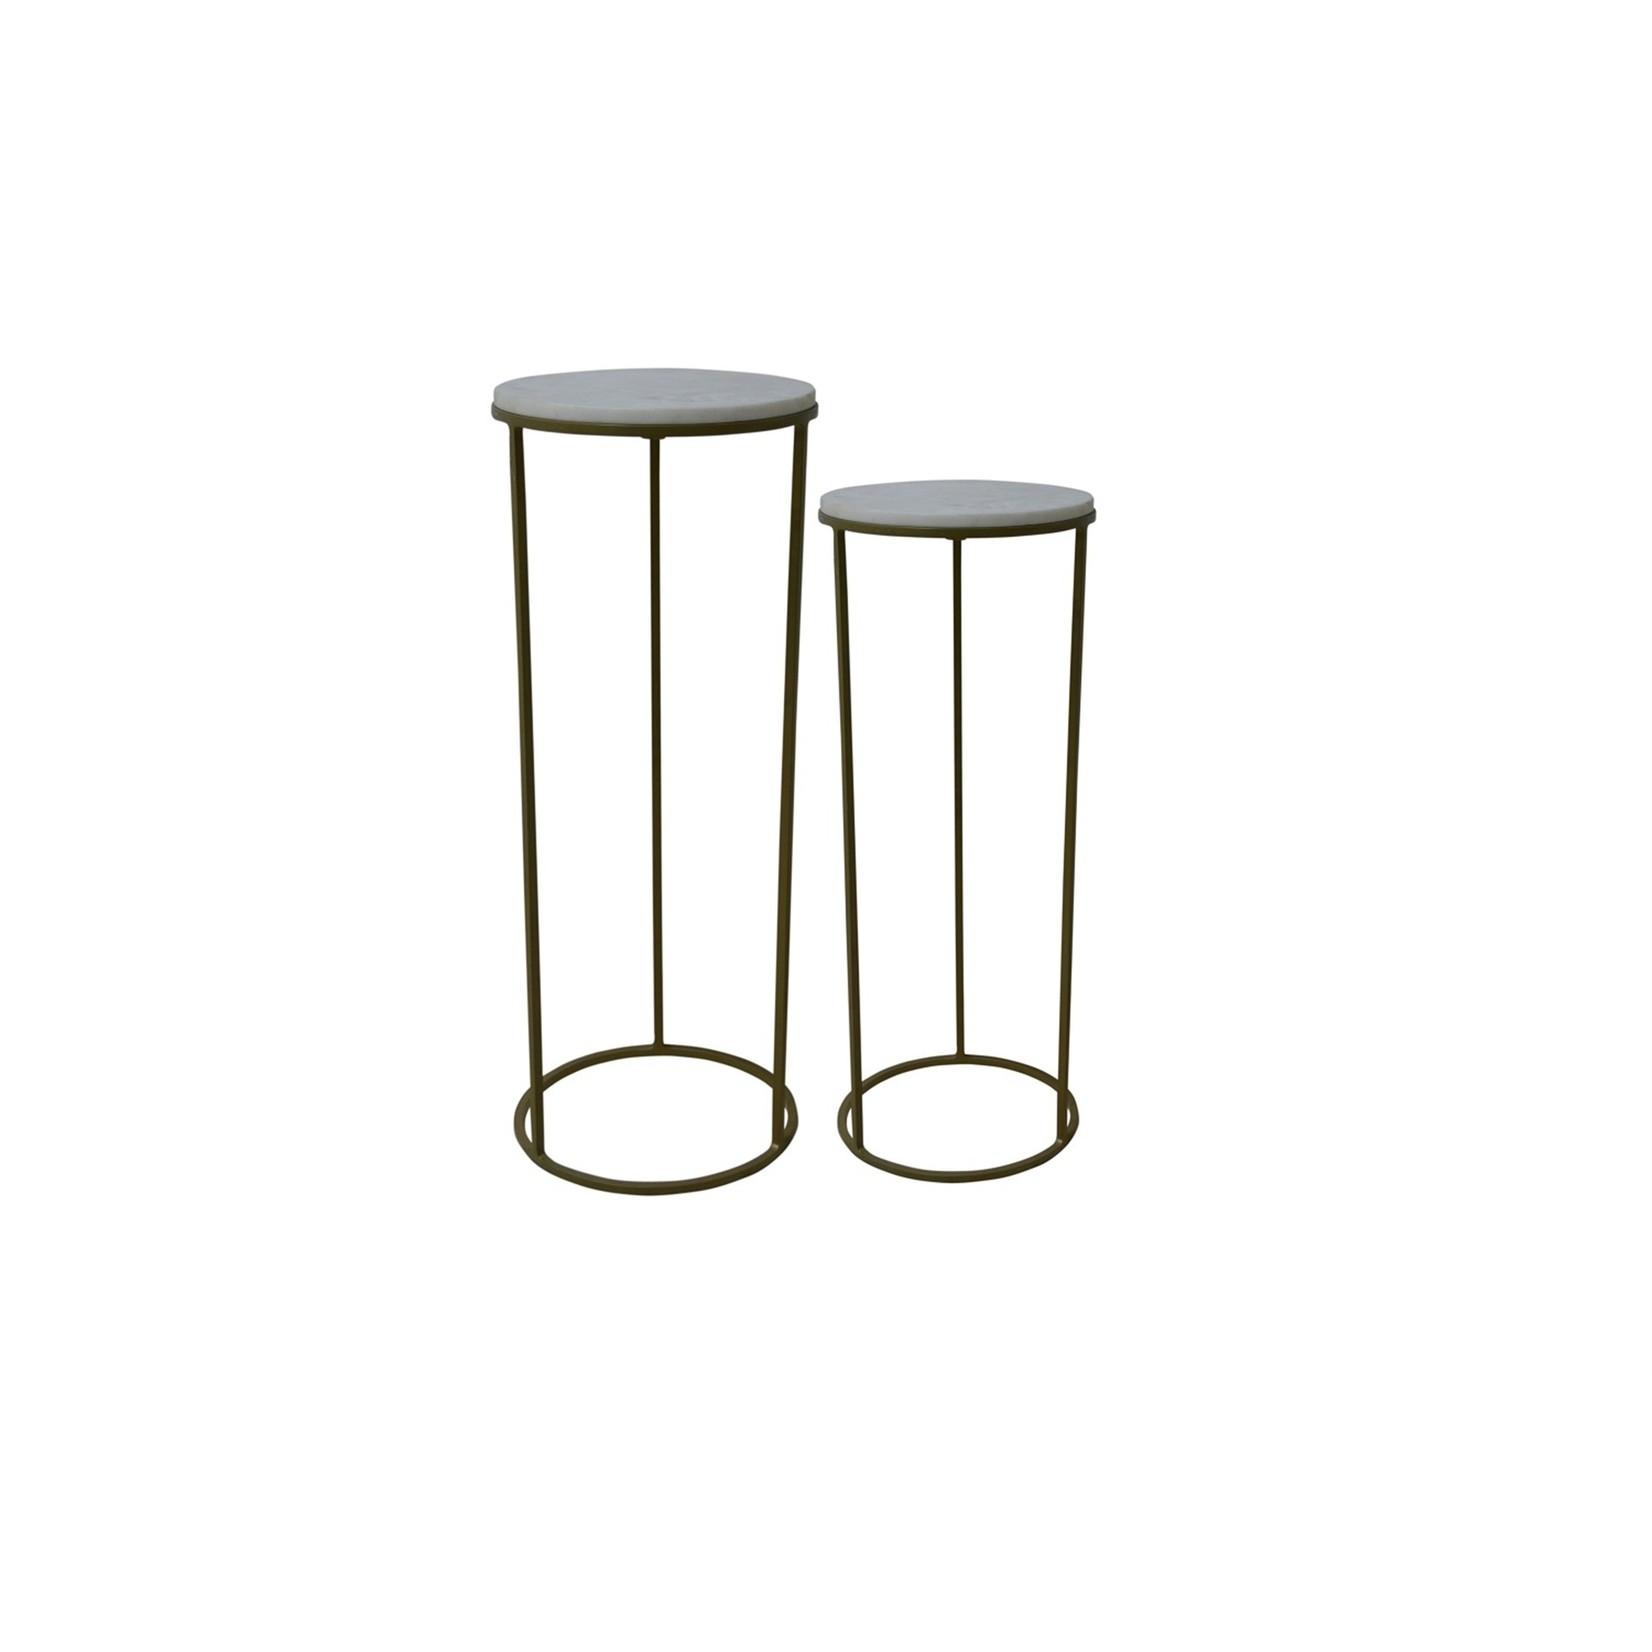 Pedestal Tables - Set of 2